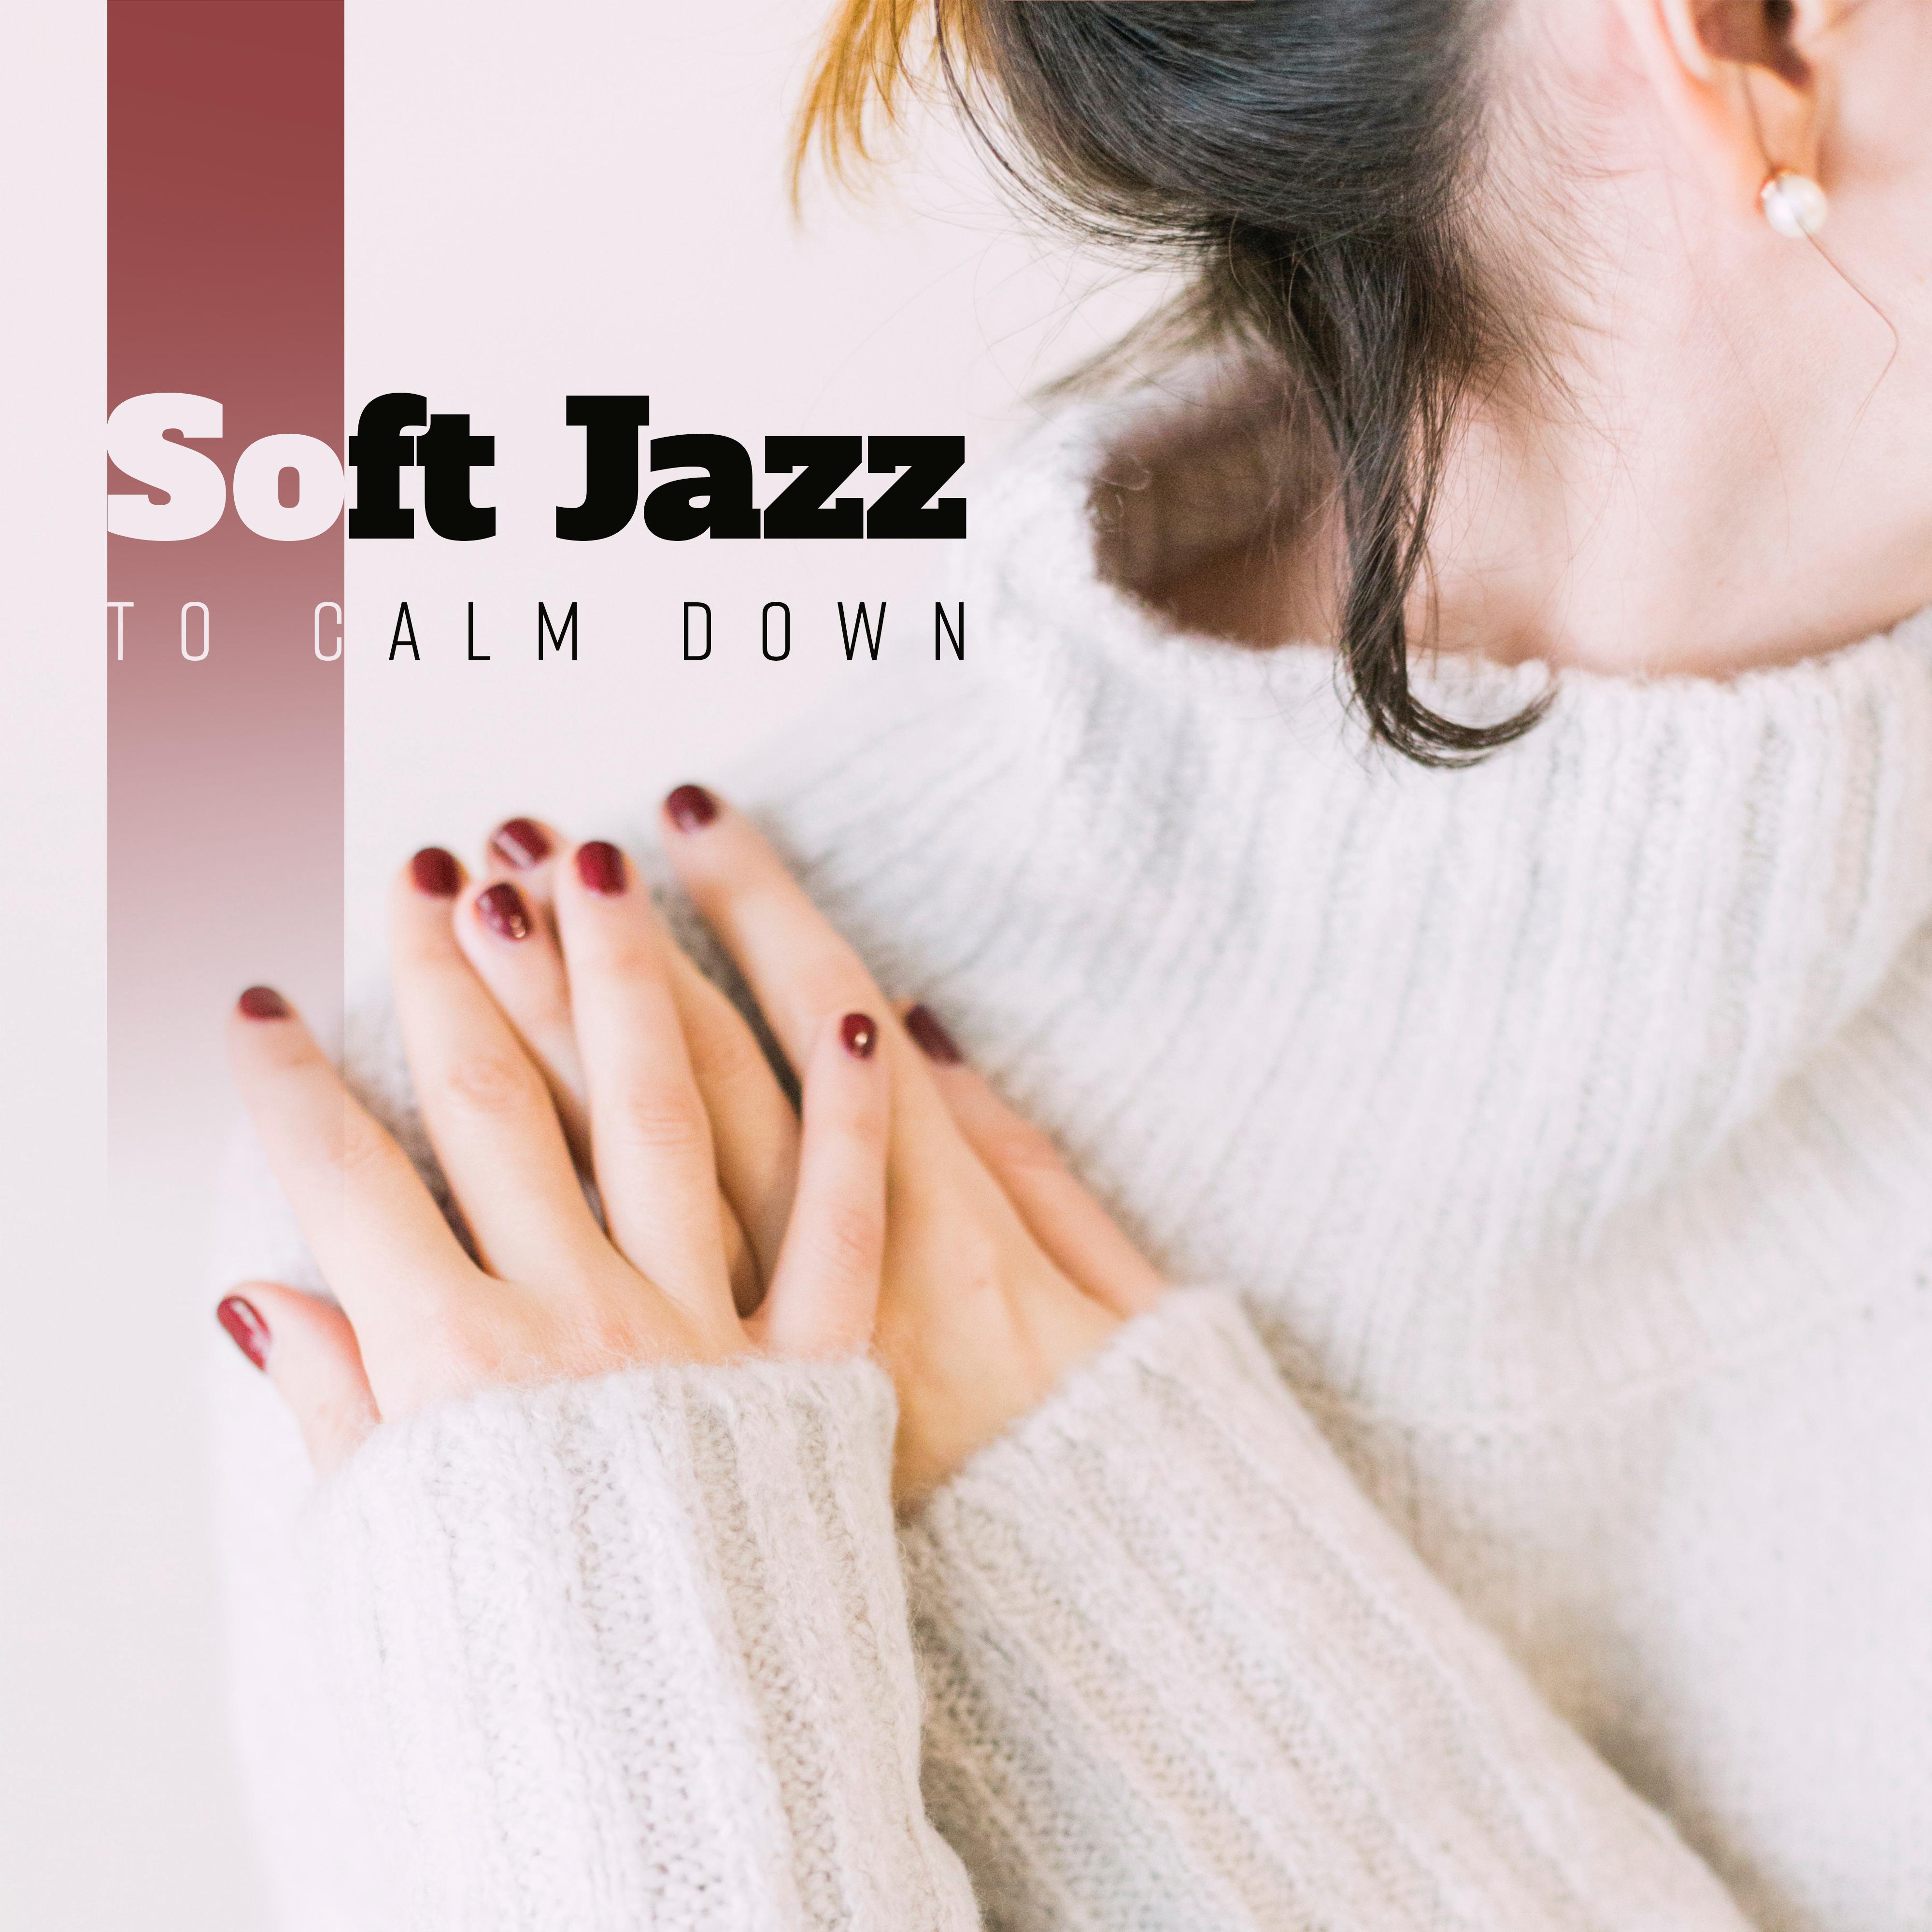 Soft Jazz to Calm Down